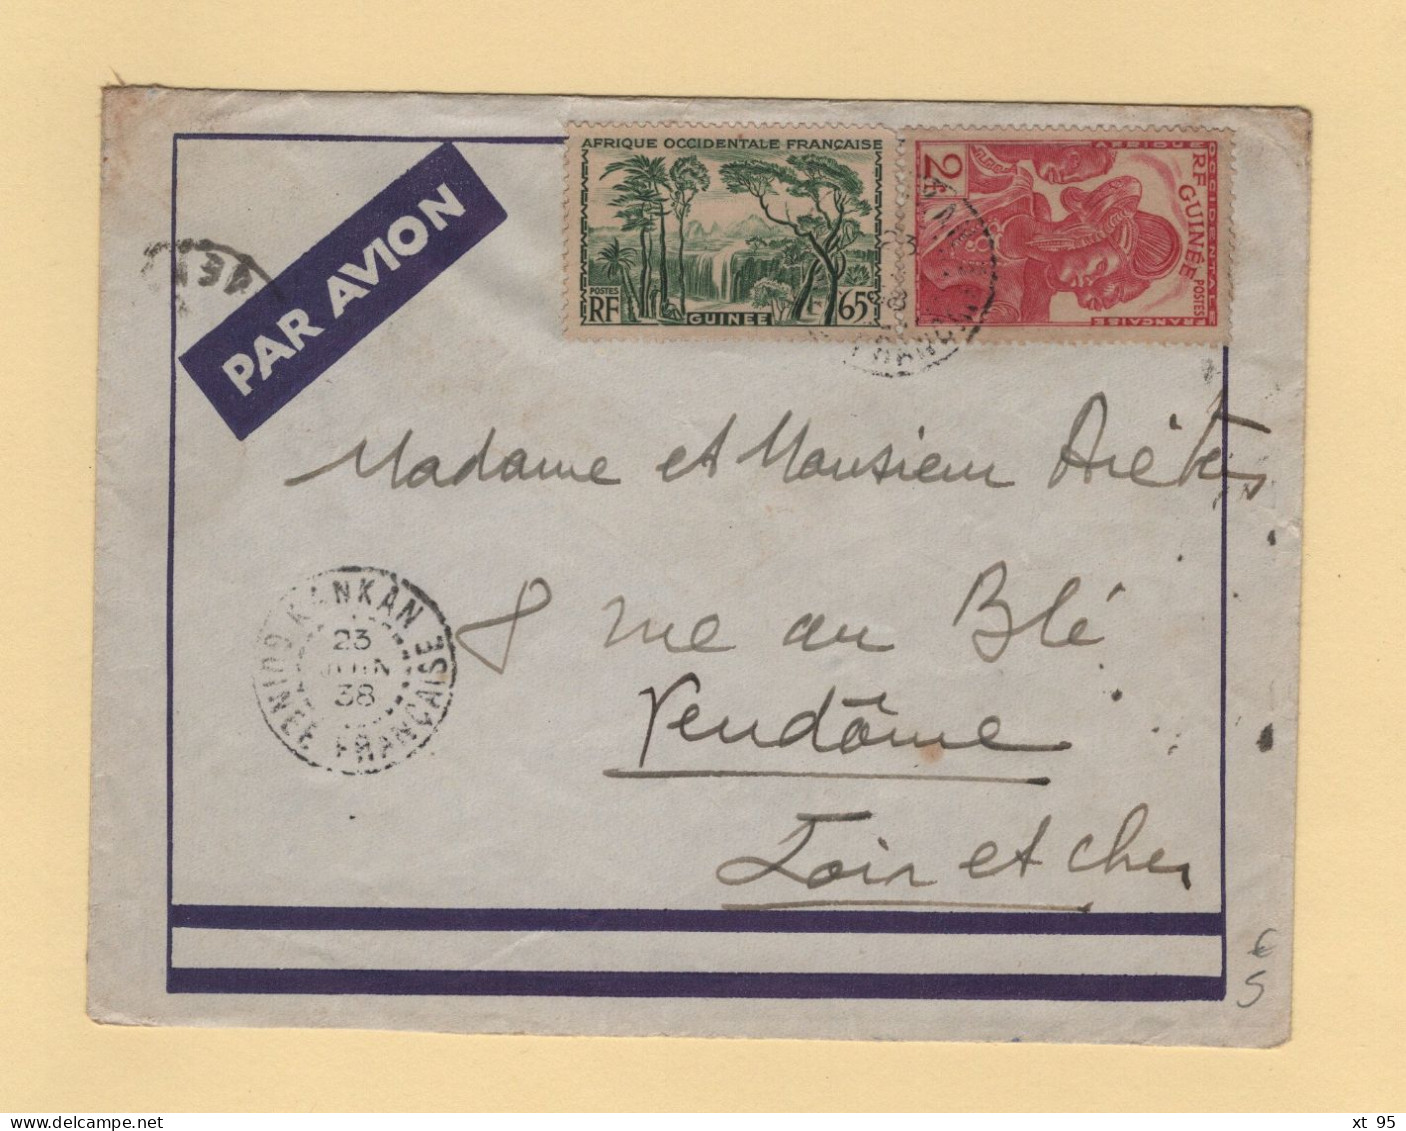 Guinee Francaise - Kankan - 1938 - Par Avion Destination France - Lettres & Documents